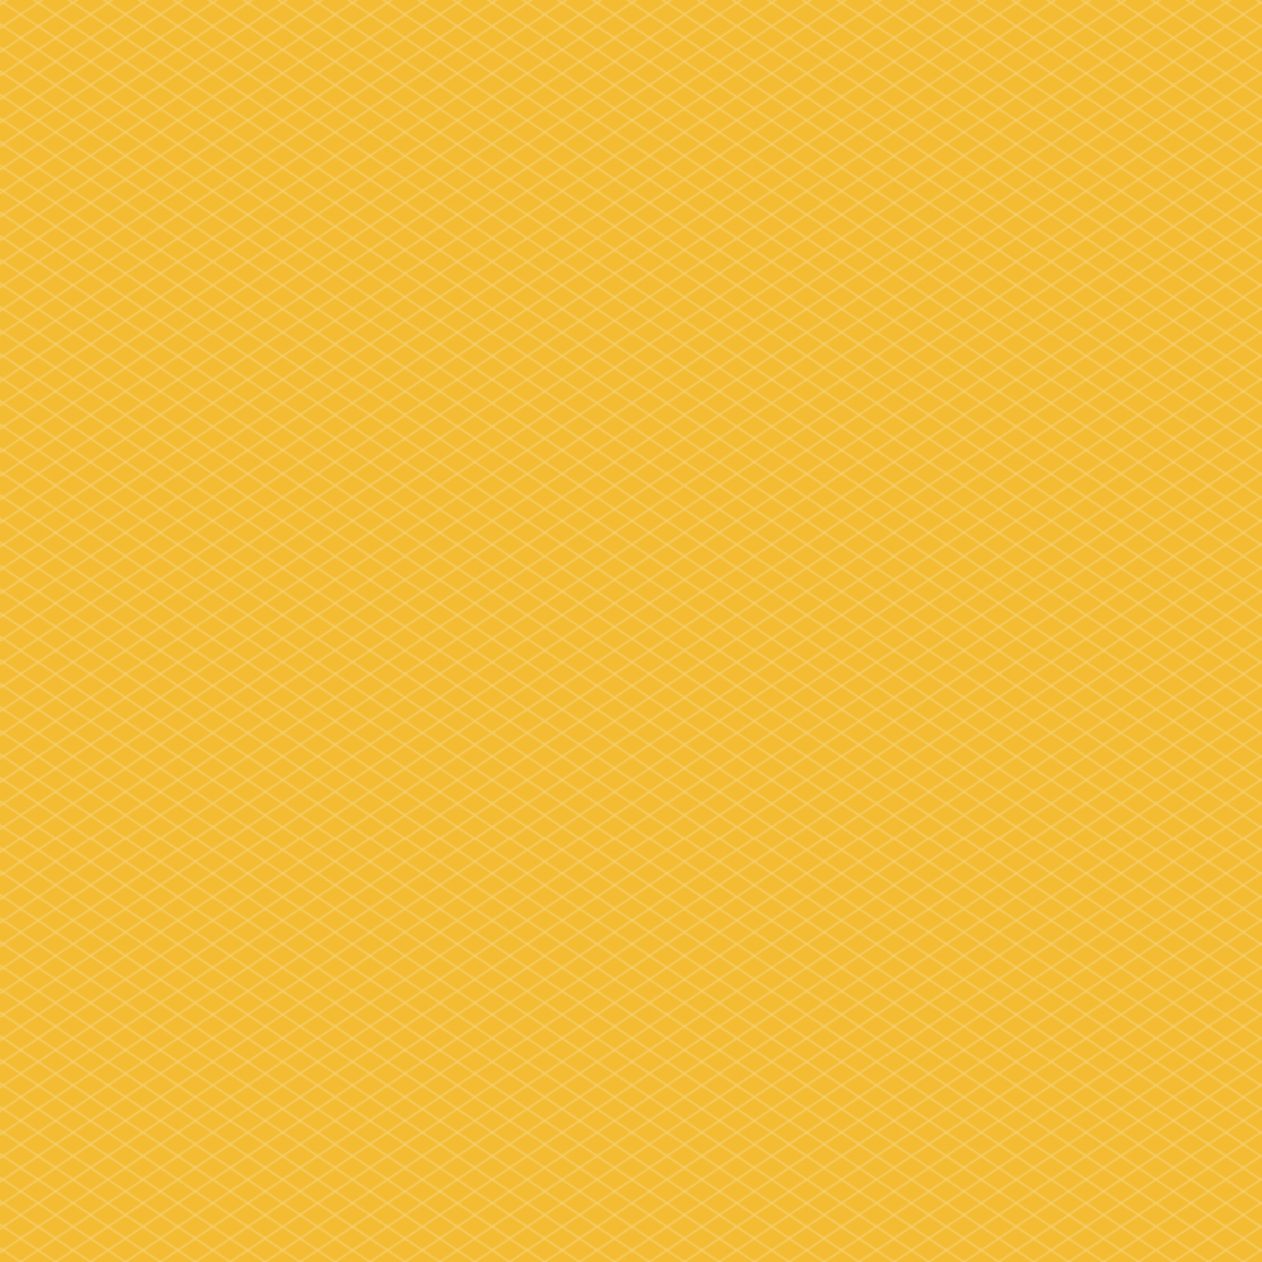 1262x1262 Parallax wallpaper 4k Yellow iPad Wallpaper 1262x1262 pixels resolution